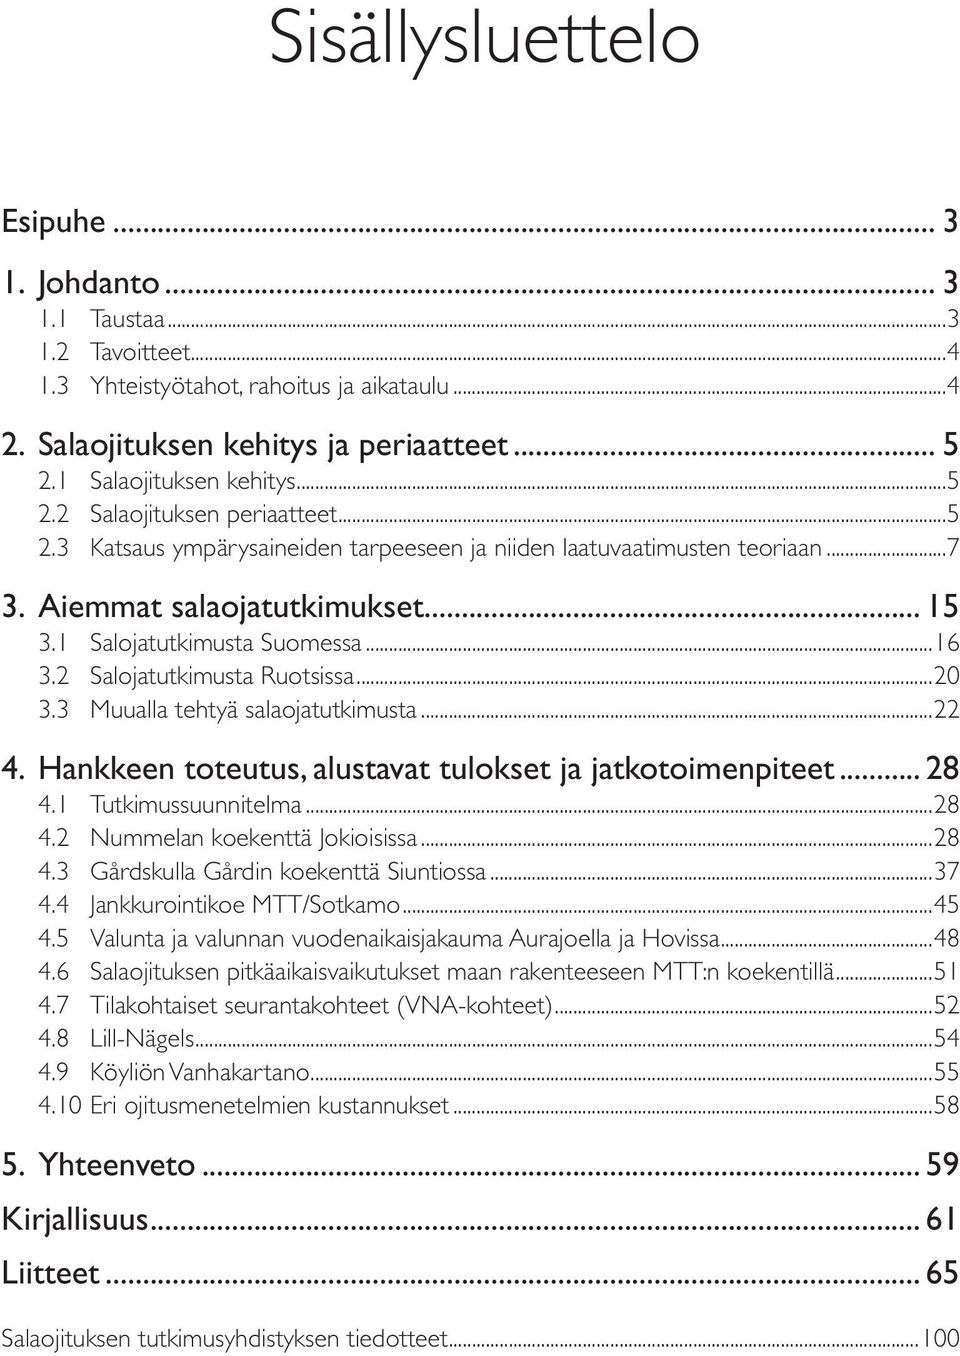 2 Salojatutkimusta Ruotsissa...20 3.3 Muualla tehtyä salaojatutkimusta...22 4. Hankkeen toteutus, alustavat tulokset ja jatkotoimenpiteet... 28 4.1 Tutkimussuunnitelma...28 4.2 Nummelan koekenttä Jokioisissa.